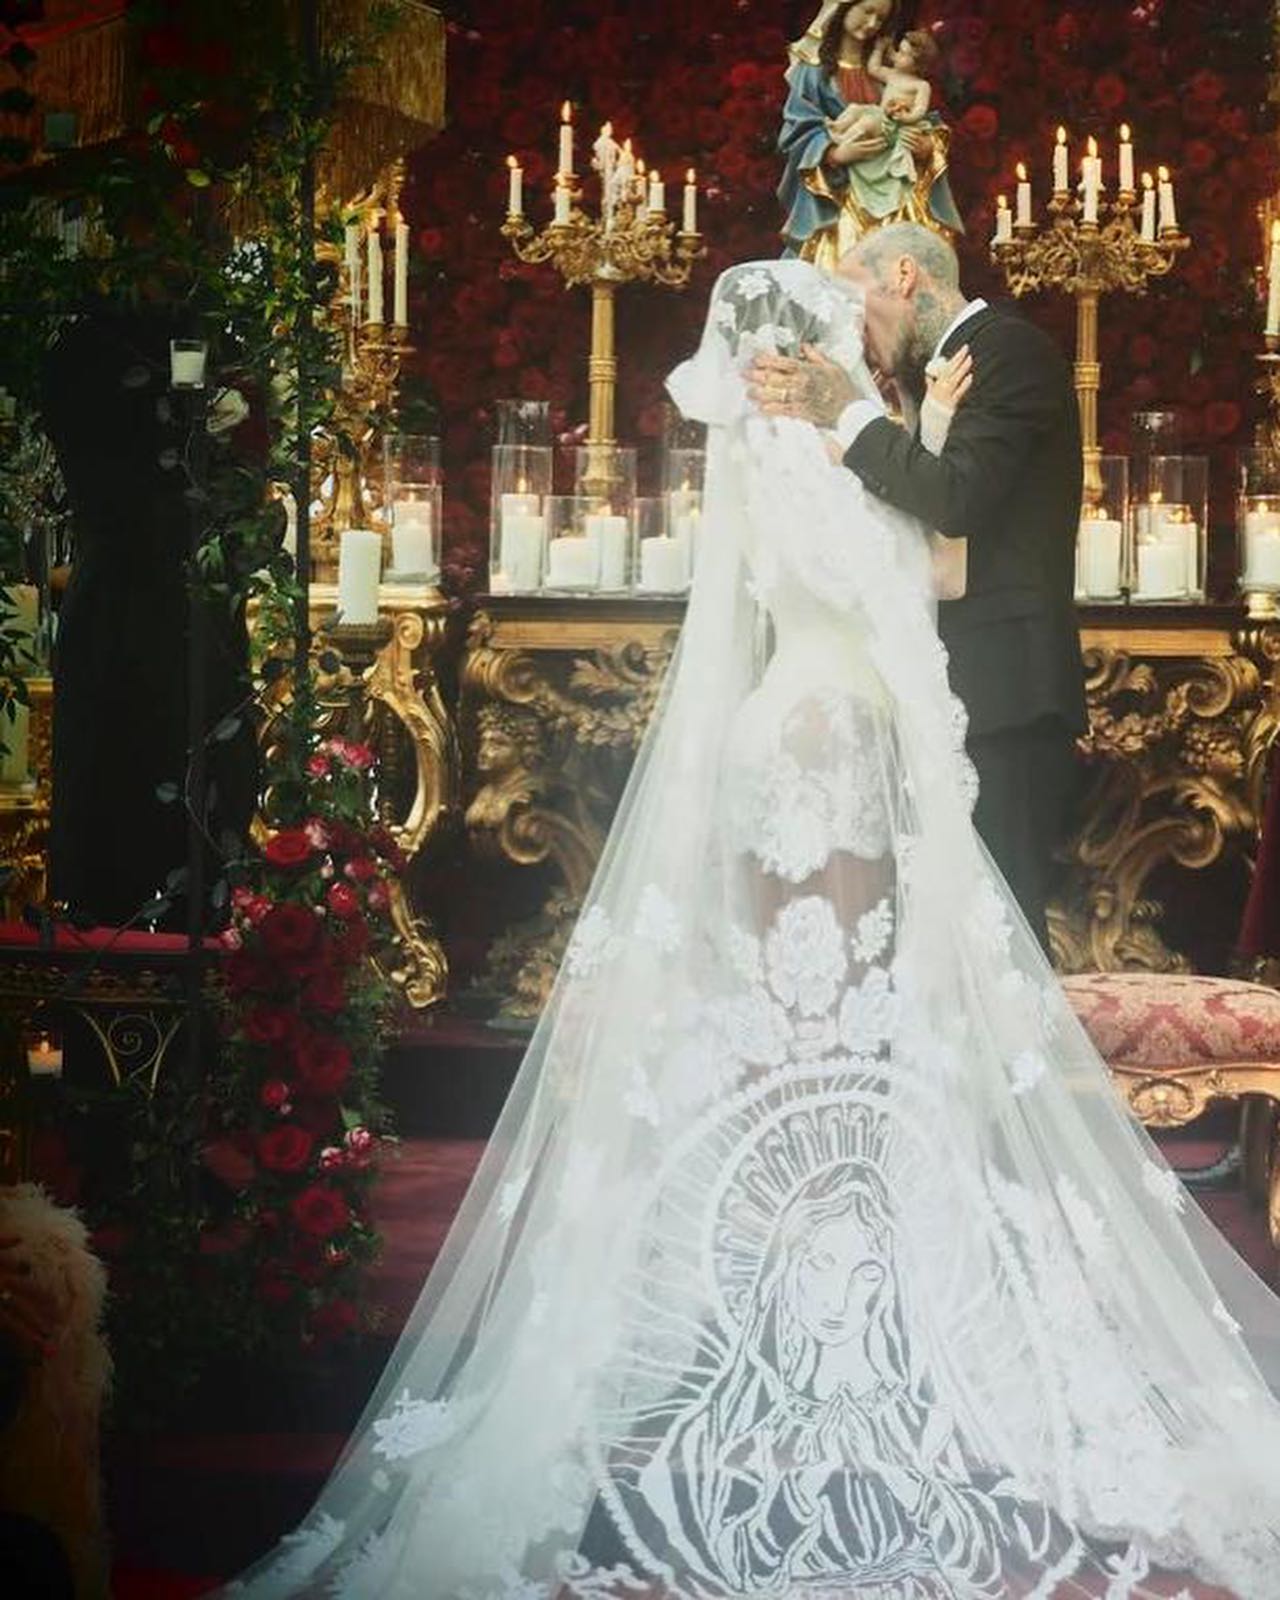 Свадьба Кортни Кардашьян: звёздные гости, Дева Мария на фате и критика платья